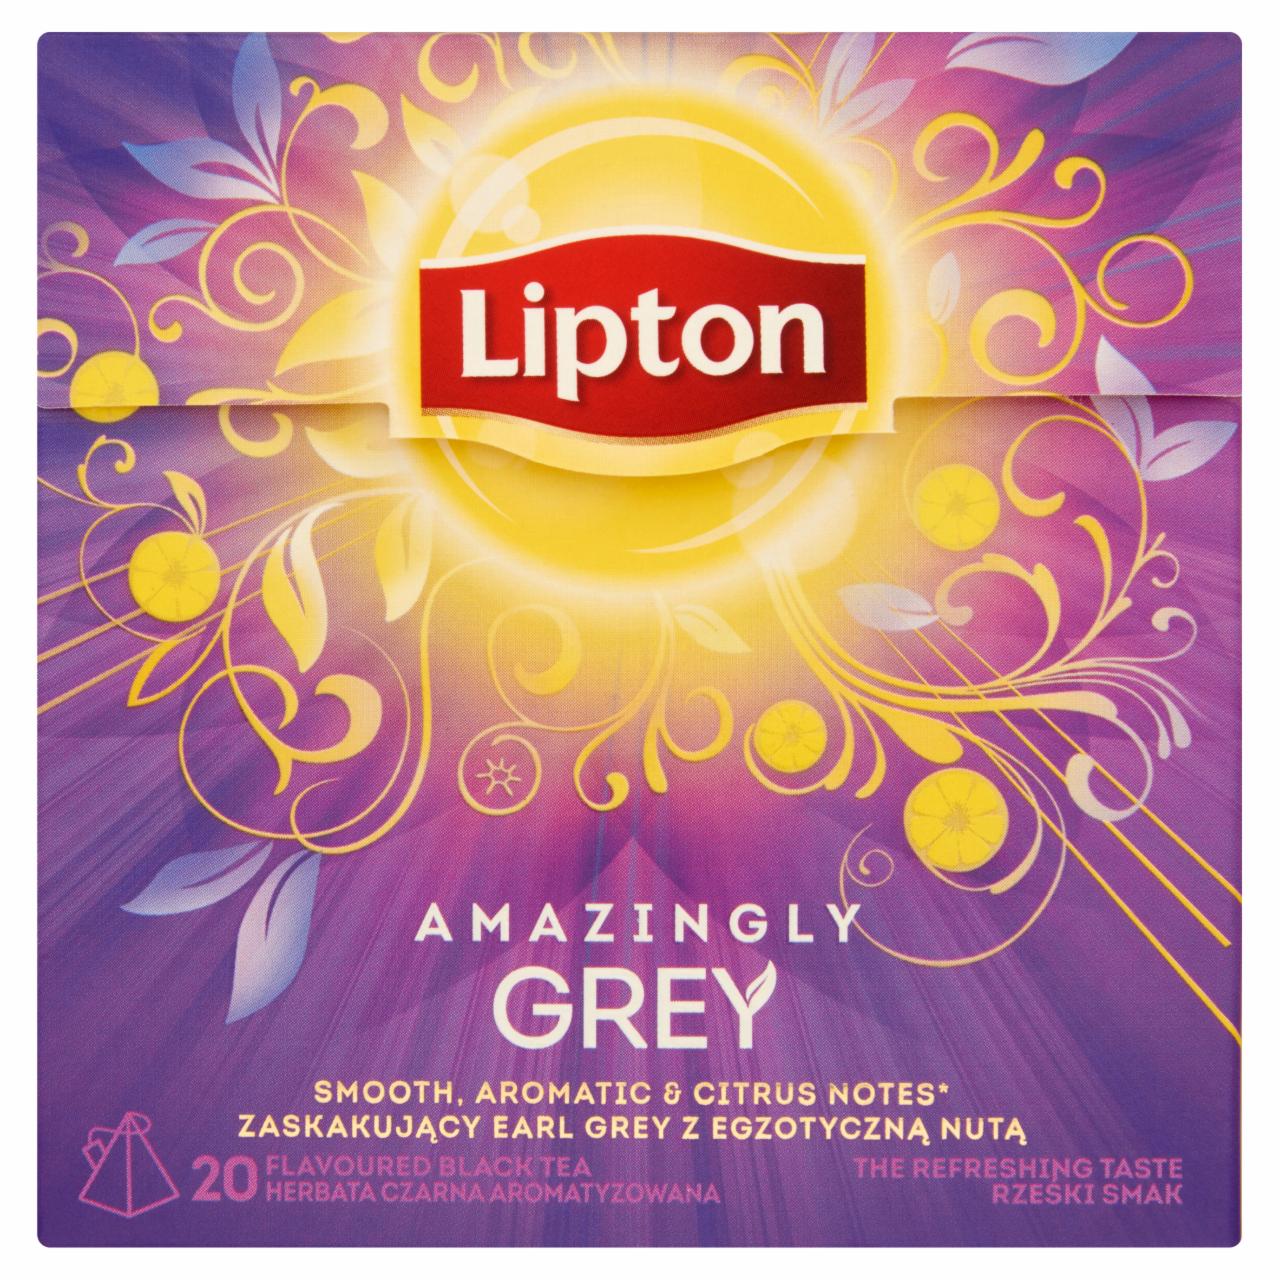 Képek - Lipton Amazingly Grey bergamott ízesítésű fekete tea 20 piramis filter